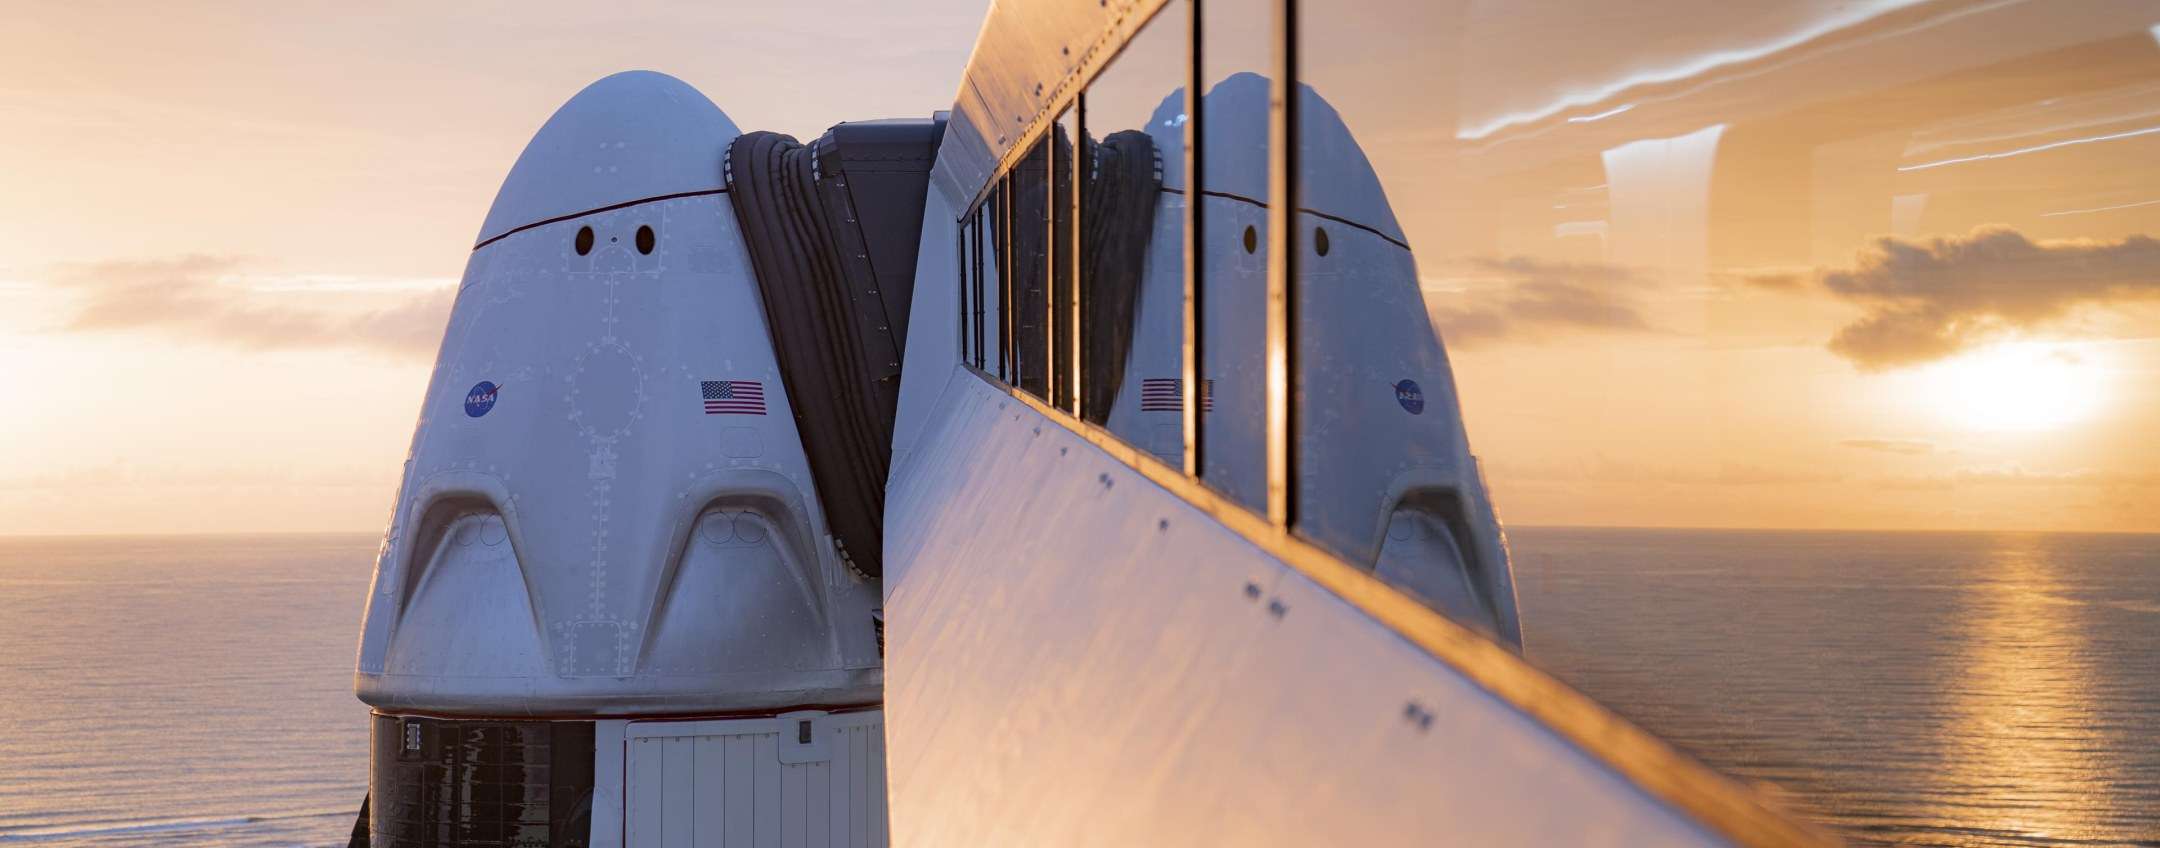 SpaceX Dragon 2